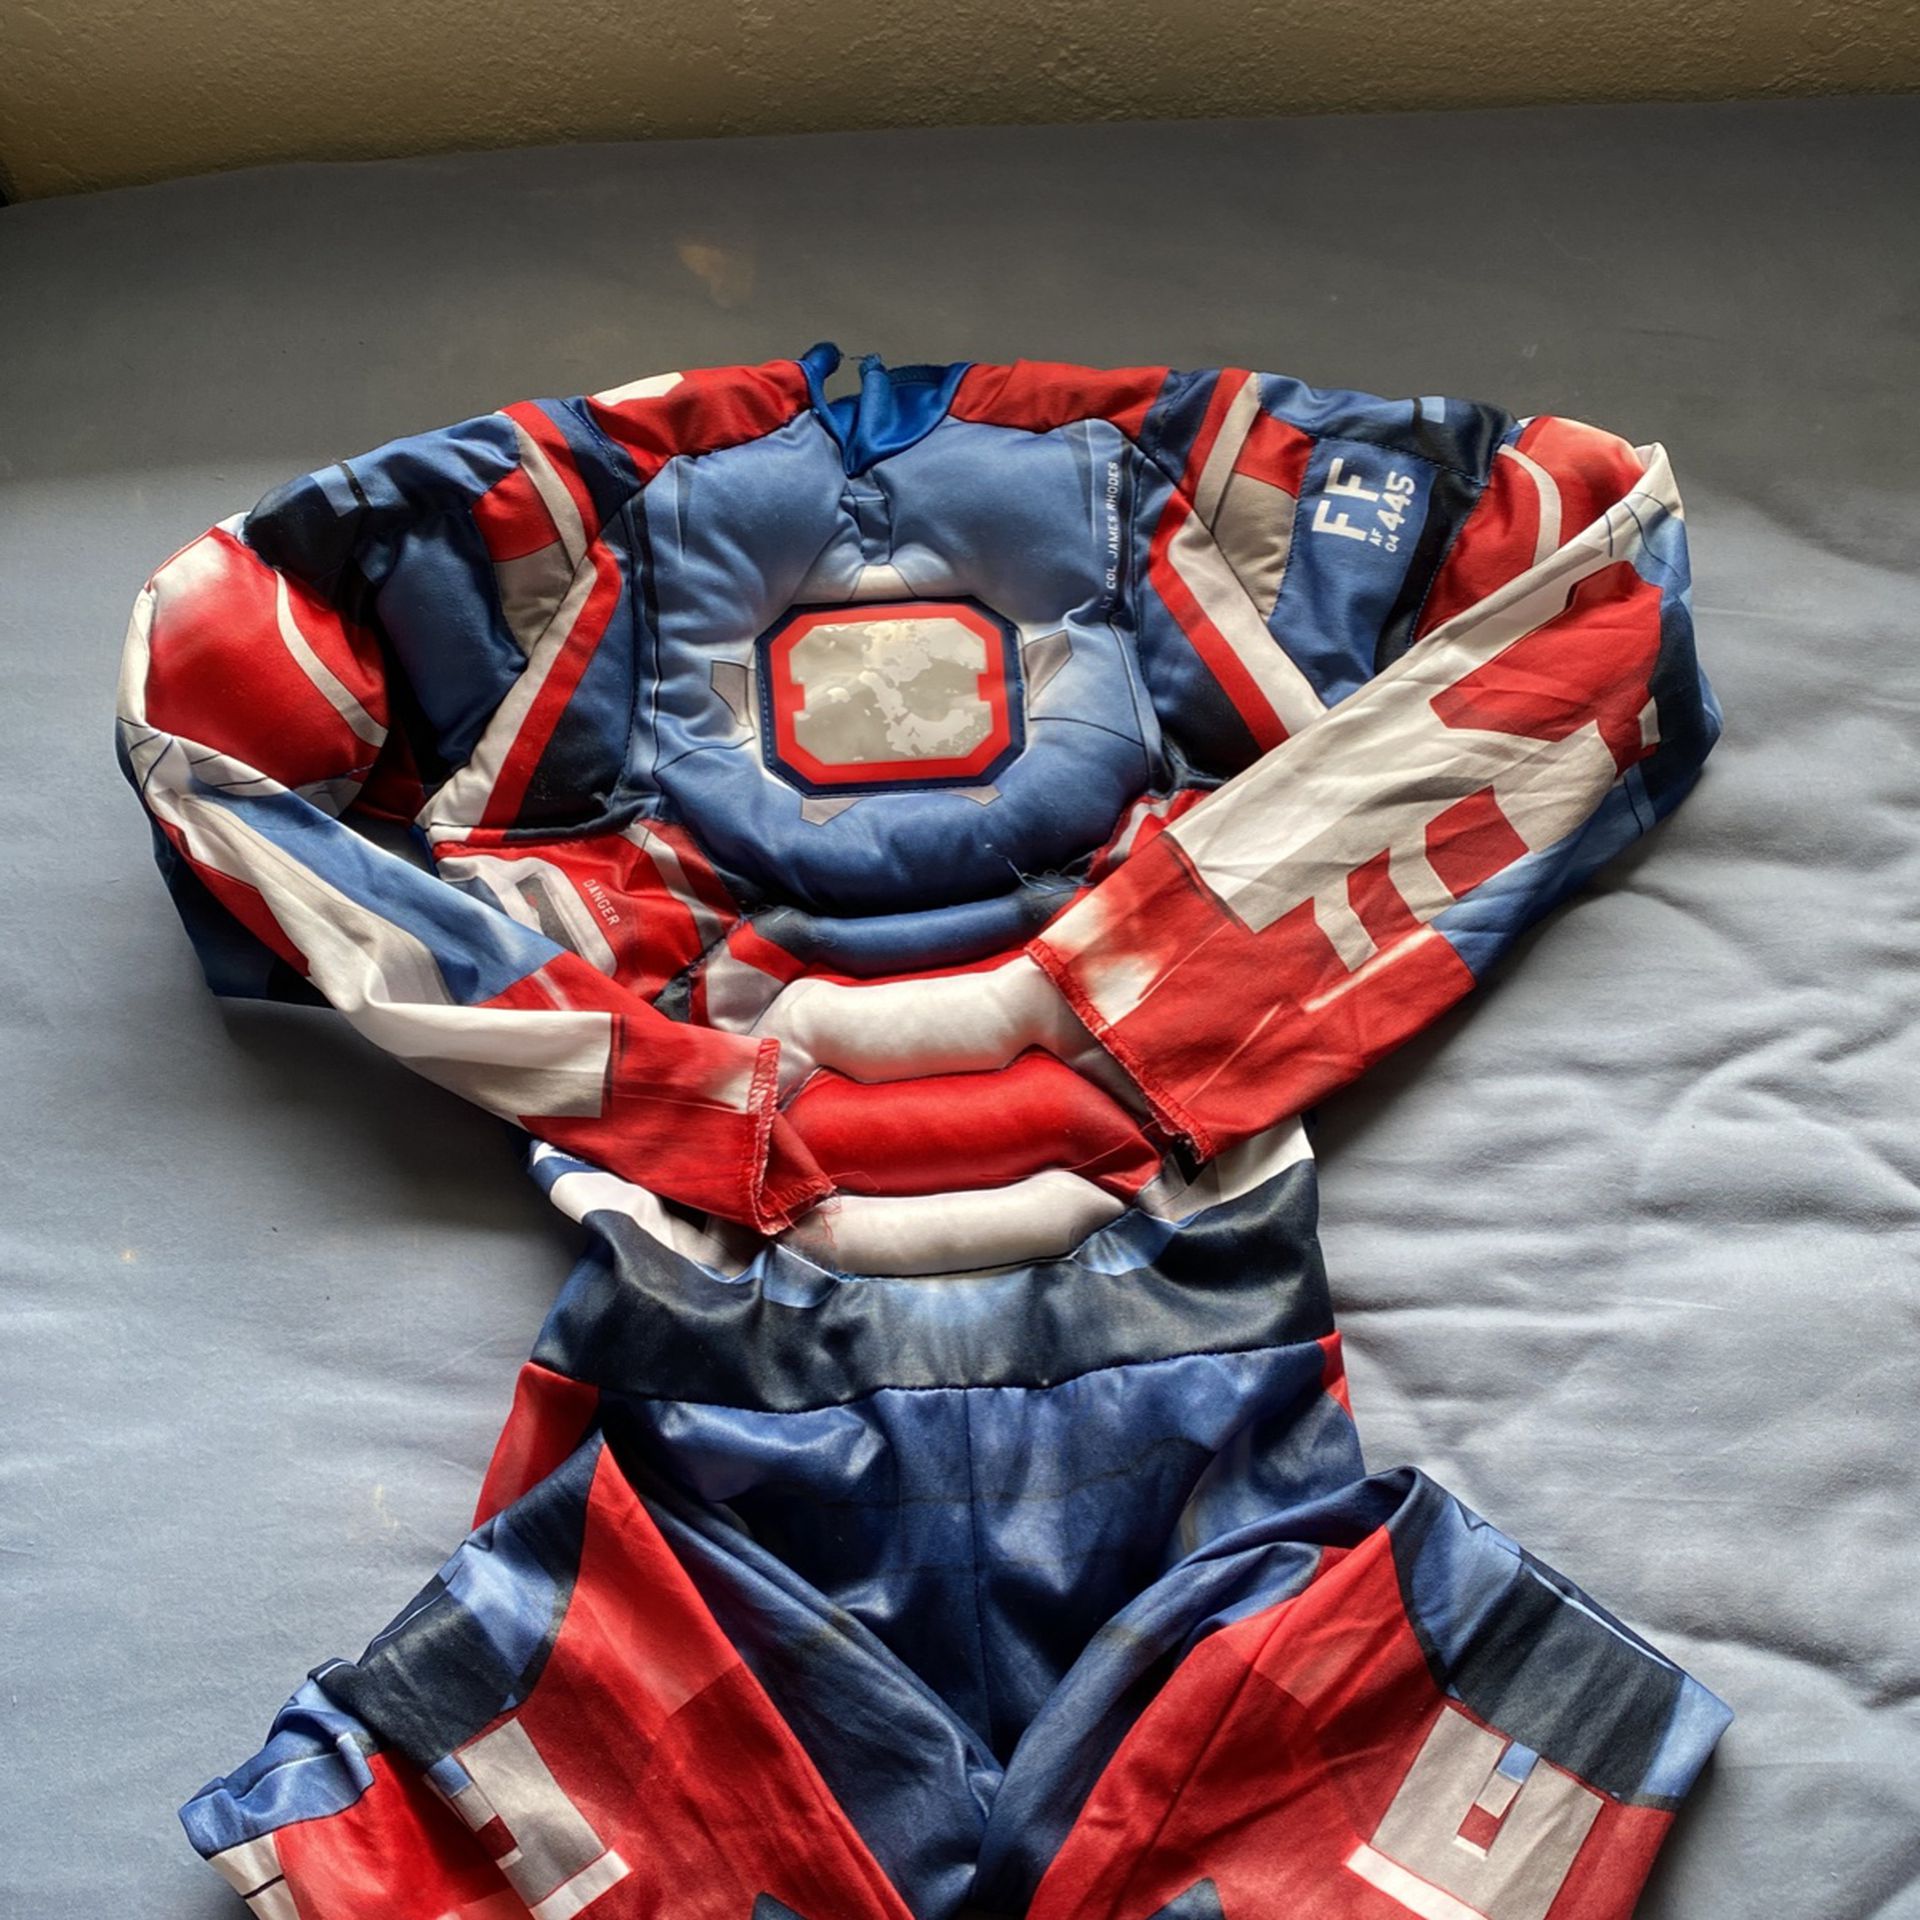 Captain America child costume size medium